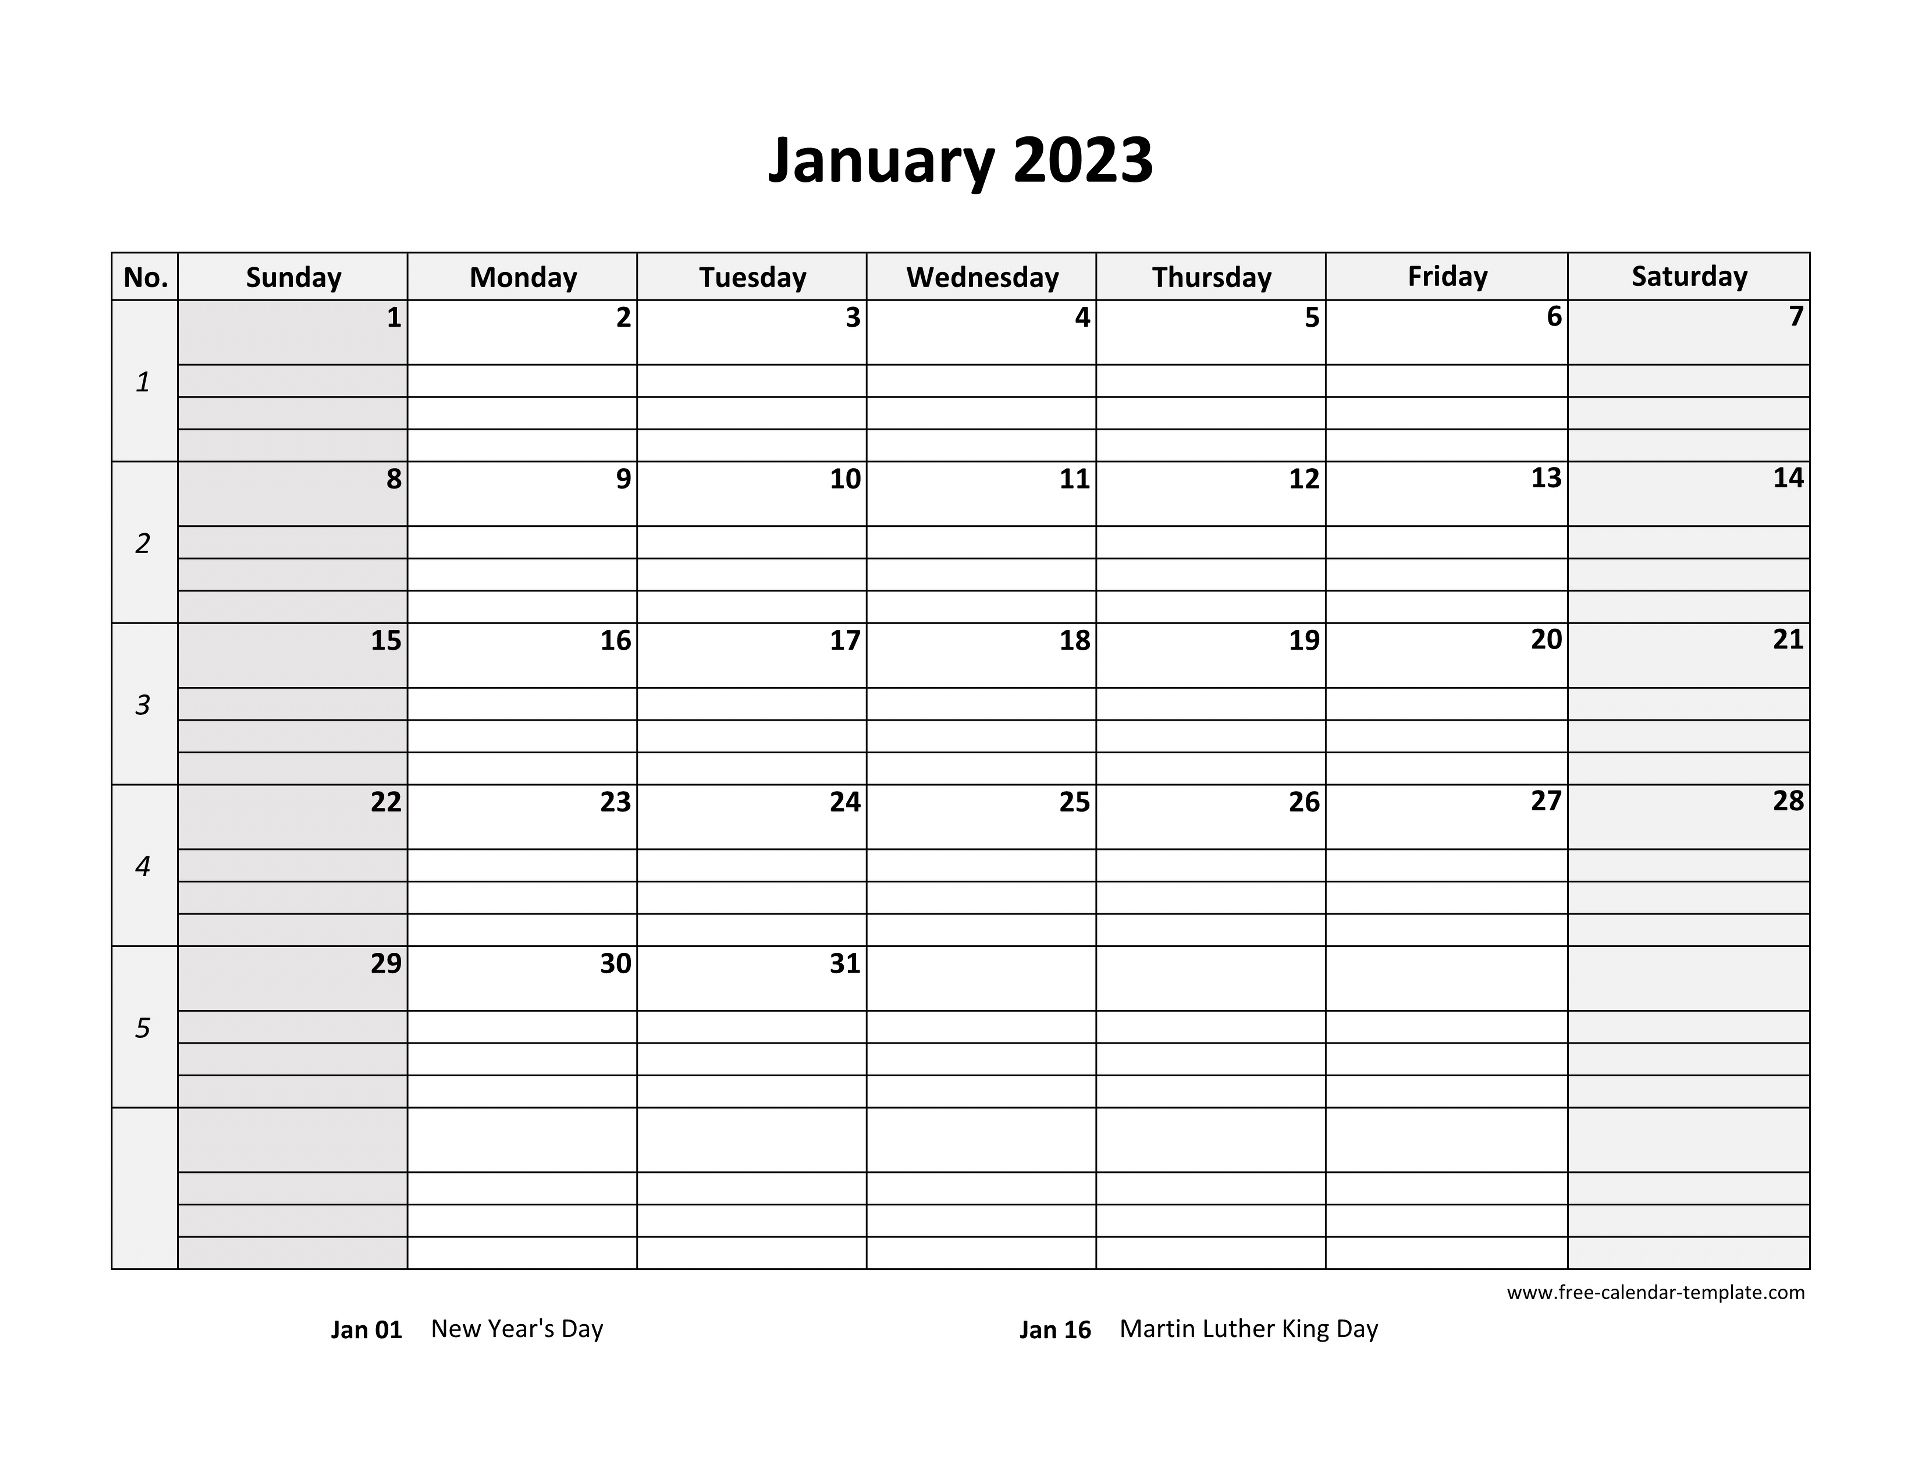 January 2023 Calendar Free Printable With Grid Lines Designed (Horizontal)  | Free-Calendar-Template.com